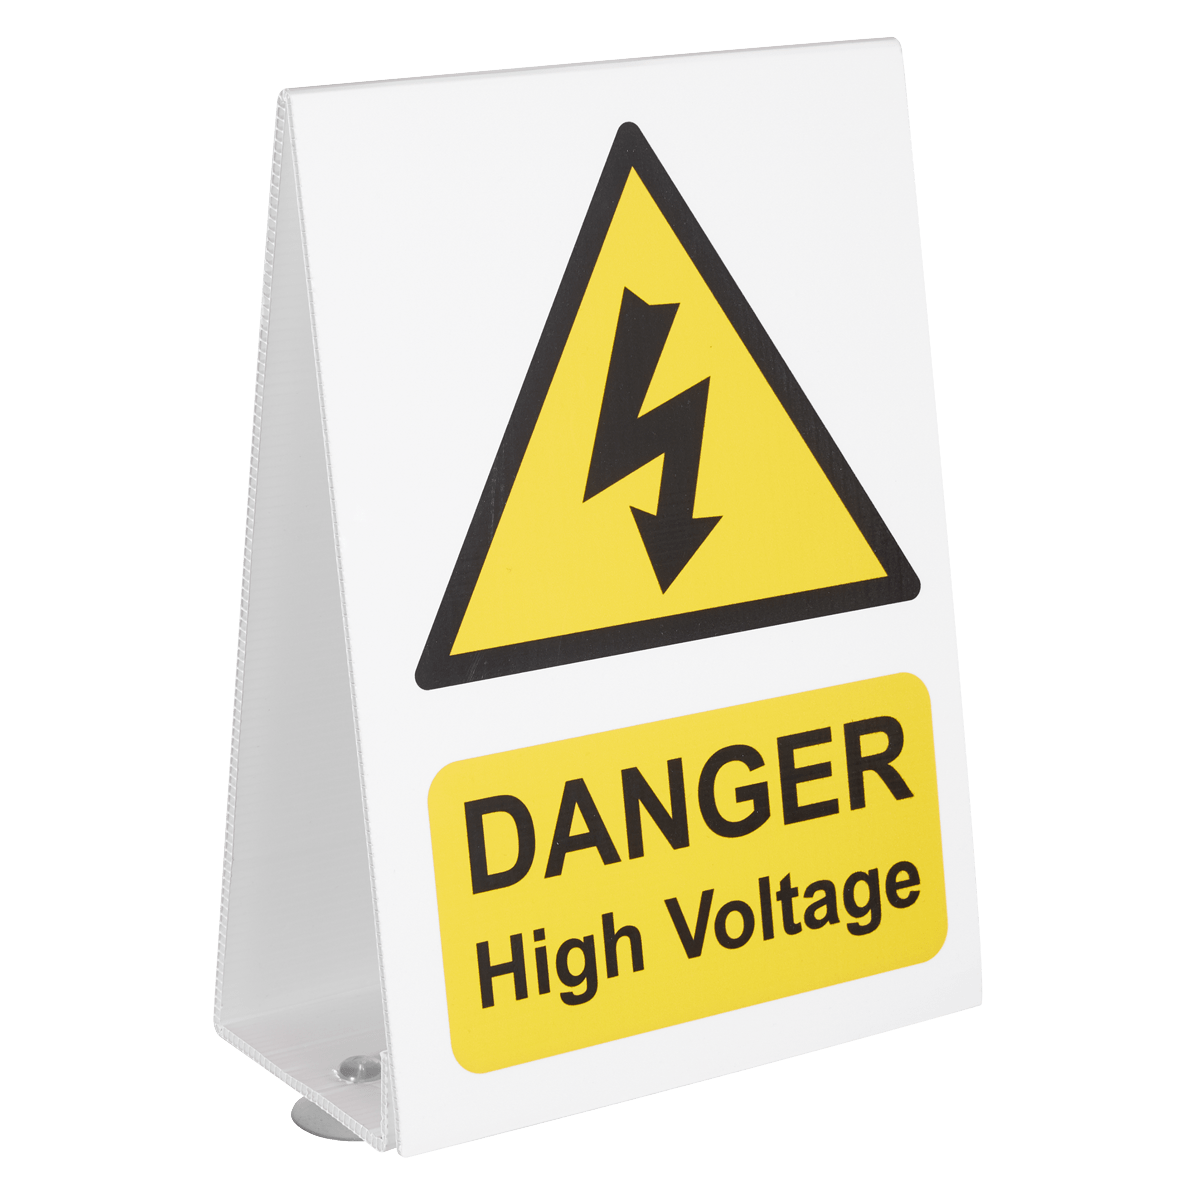 High Voltage Vehicle Warning Sign K & S McKenzie